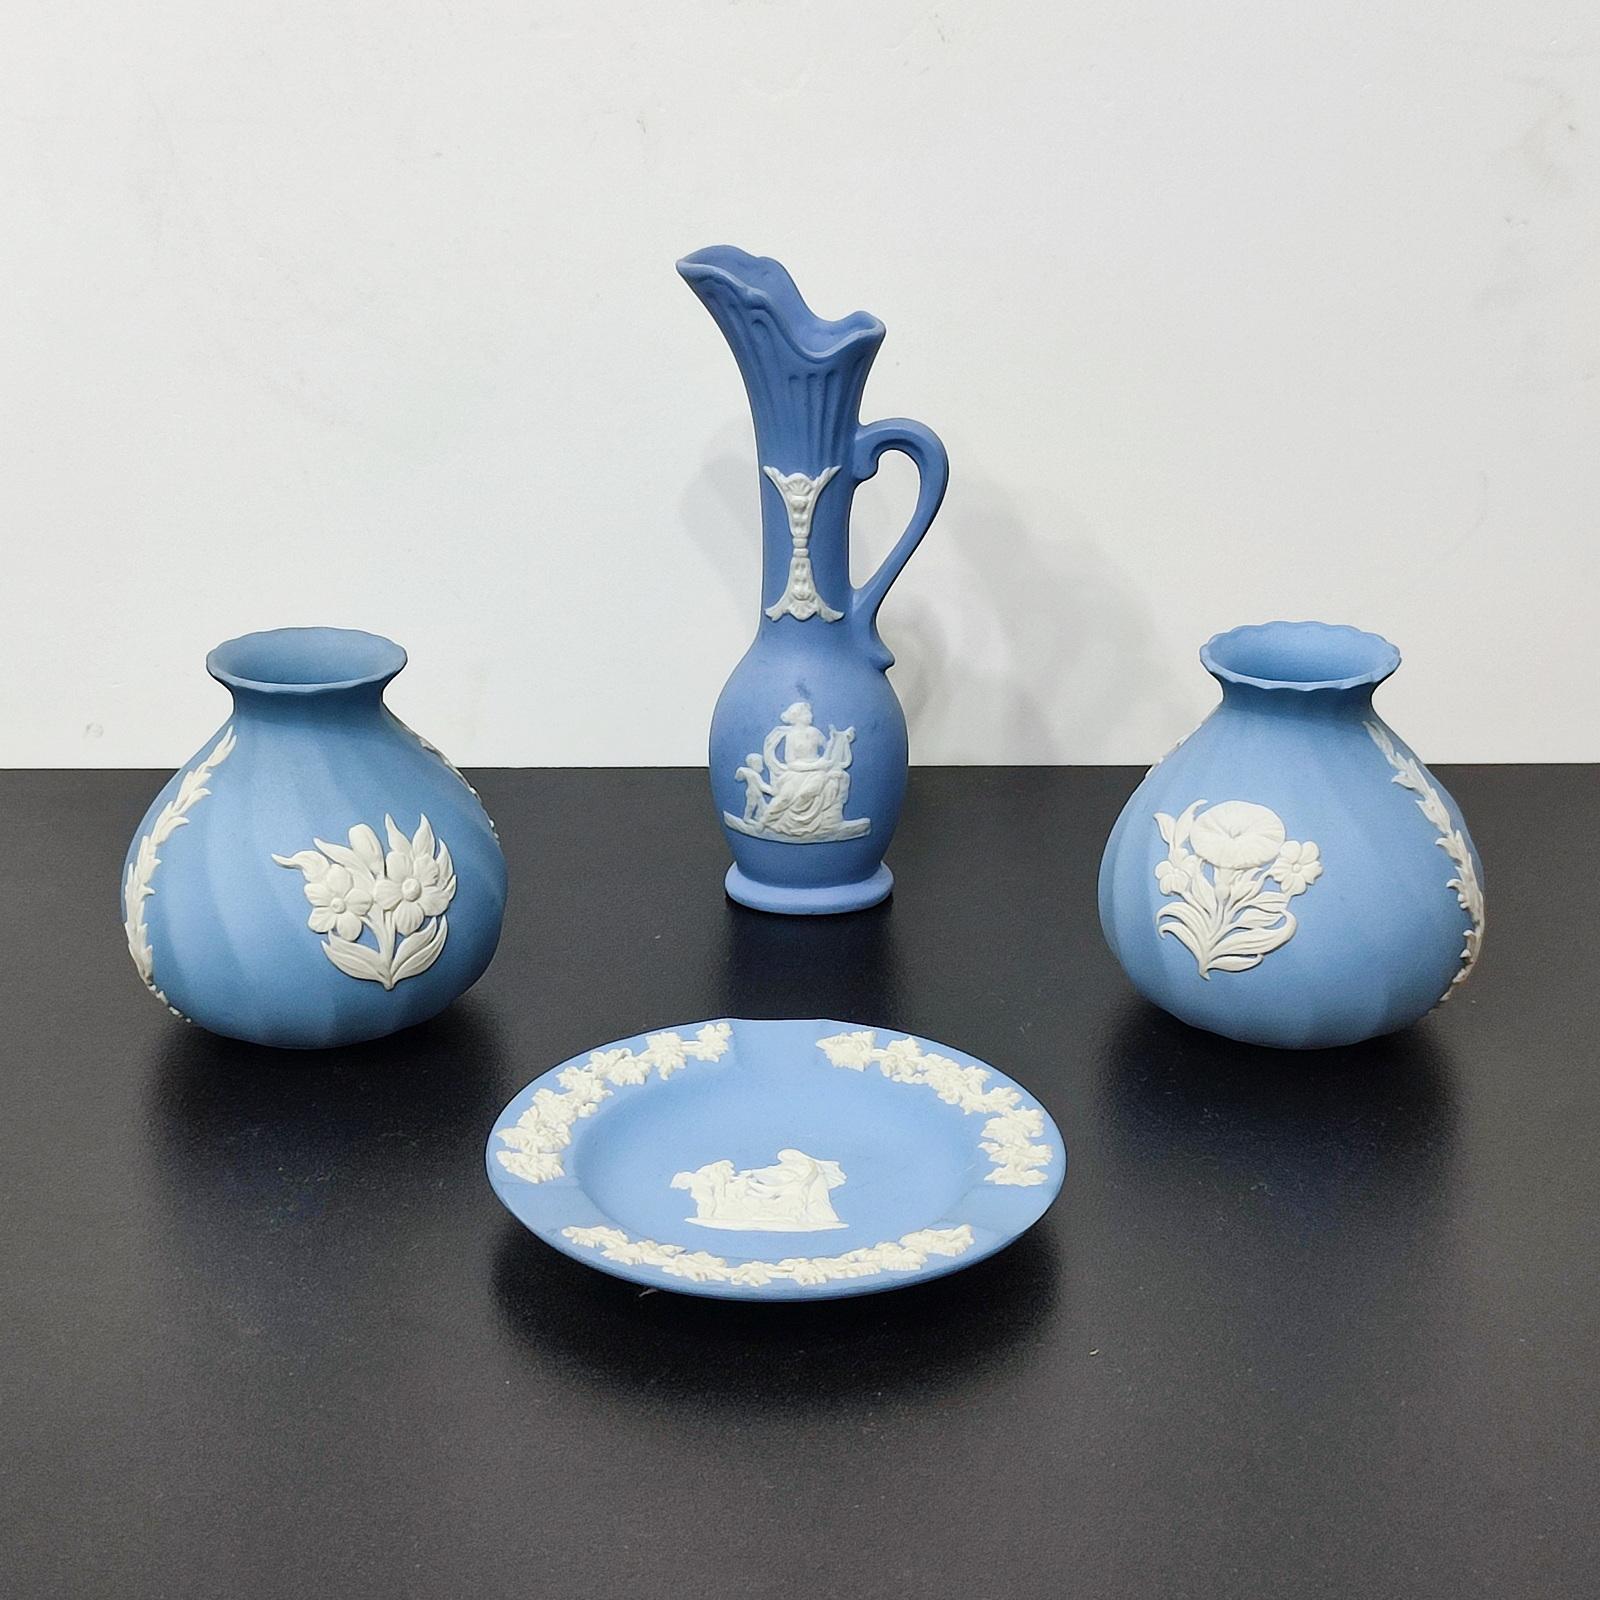 Eine schöne Sammlung von Wedgwood Jasperware Pale Blue vier Stücke, bestehend aus einem Krug, ein Paar Vasen, und ein Aschenbecher. Hergestellt von Wedgwood in England in den 1980er Jahren, markiert/gestempelt auf dem Boden.
Abmessungen:
Krug